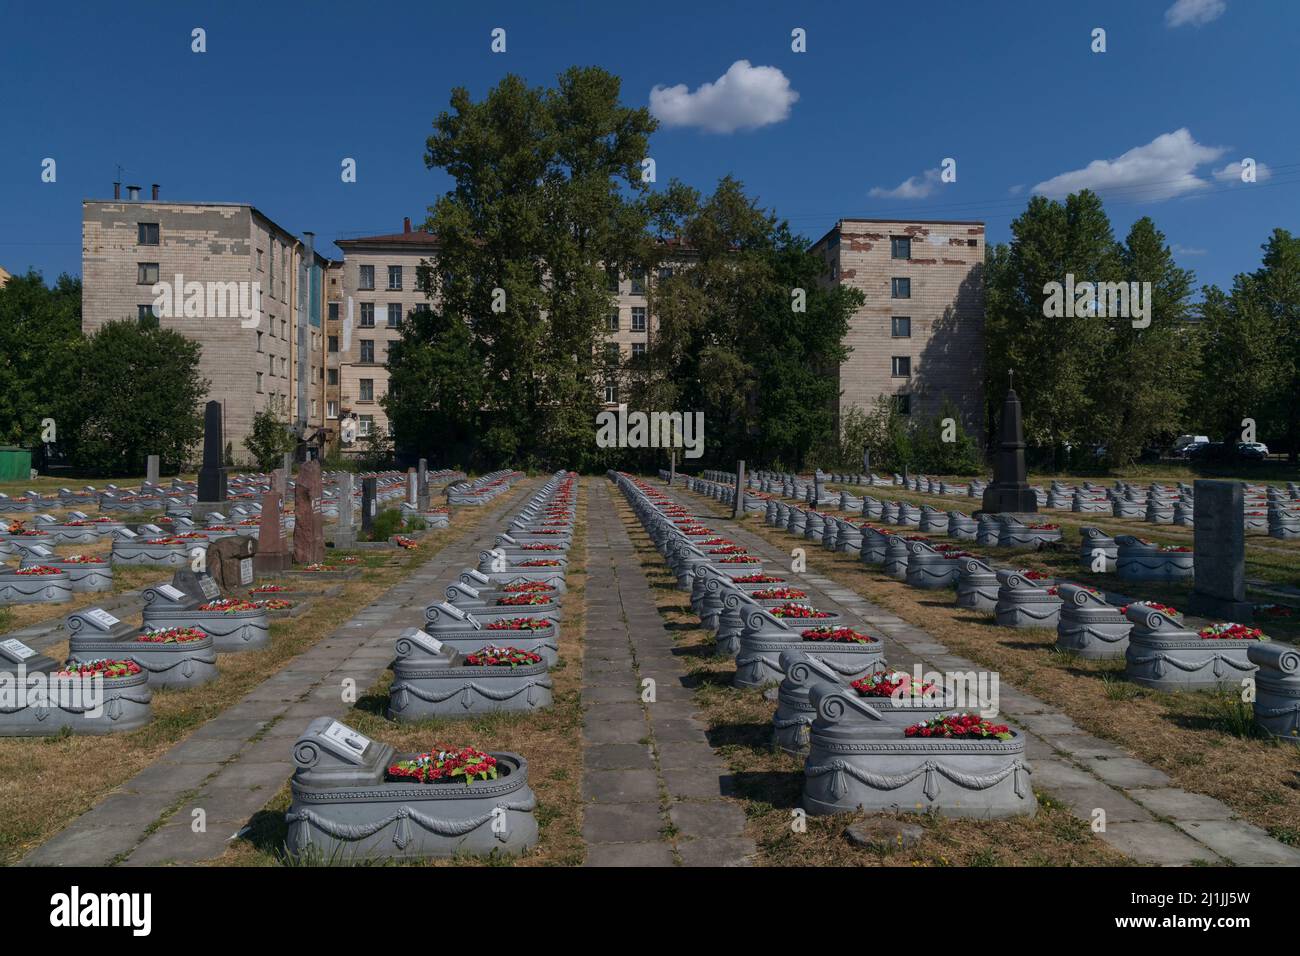 Sankt Petersburg, Russland - 18. Juli 2021: Reihen von Gräbern auf dem Militärfriedhof des Zweiten Weltkriegs vor dem Hintergrund eines Wohngebäudes Stockfoto